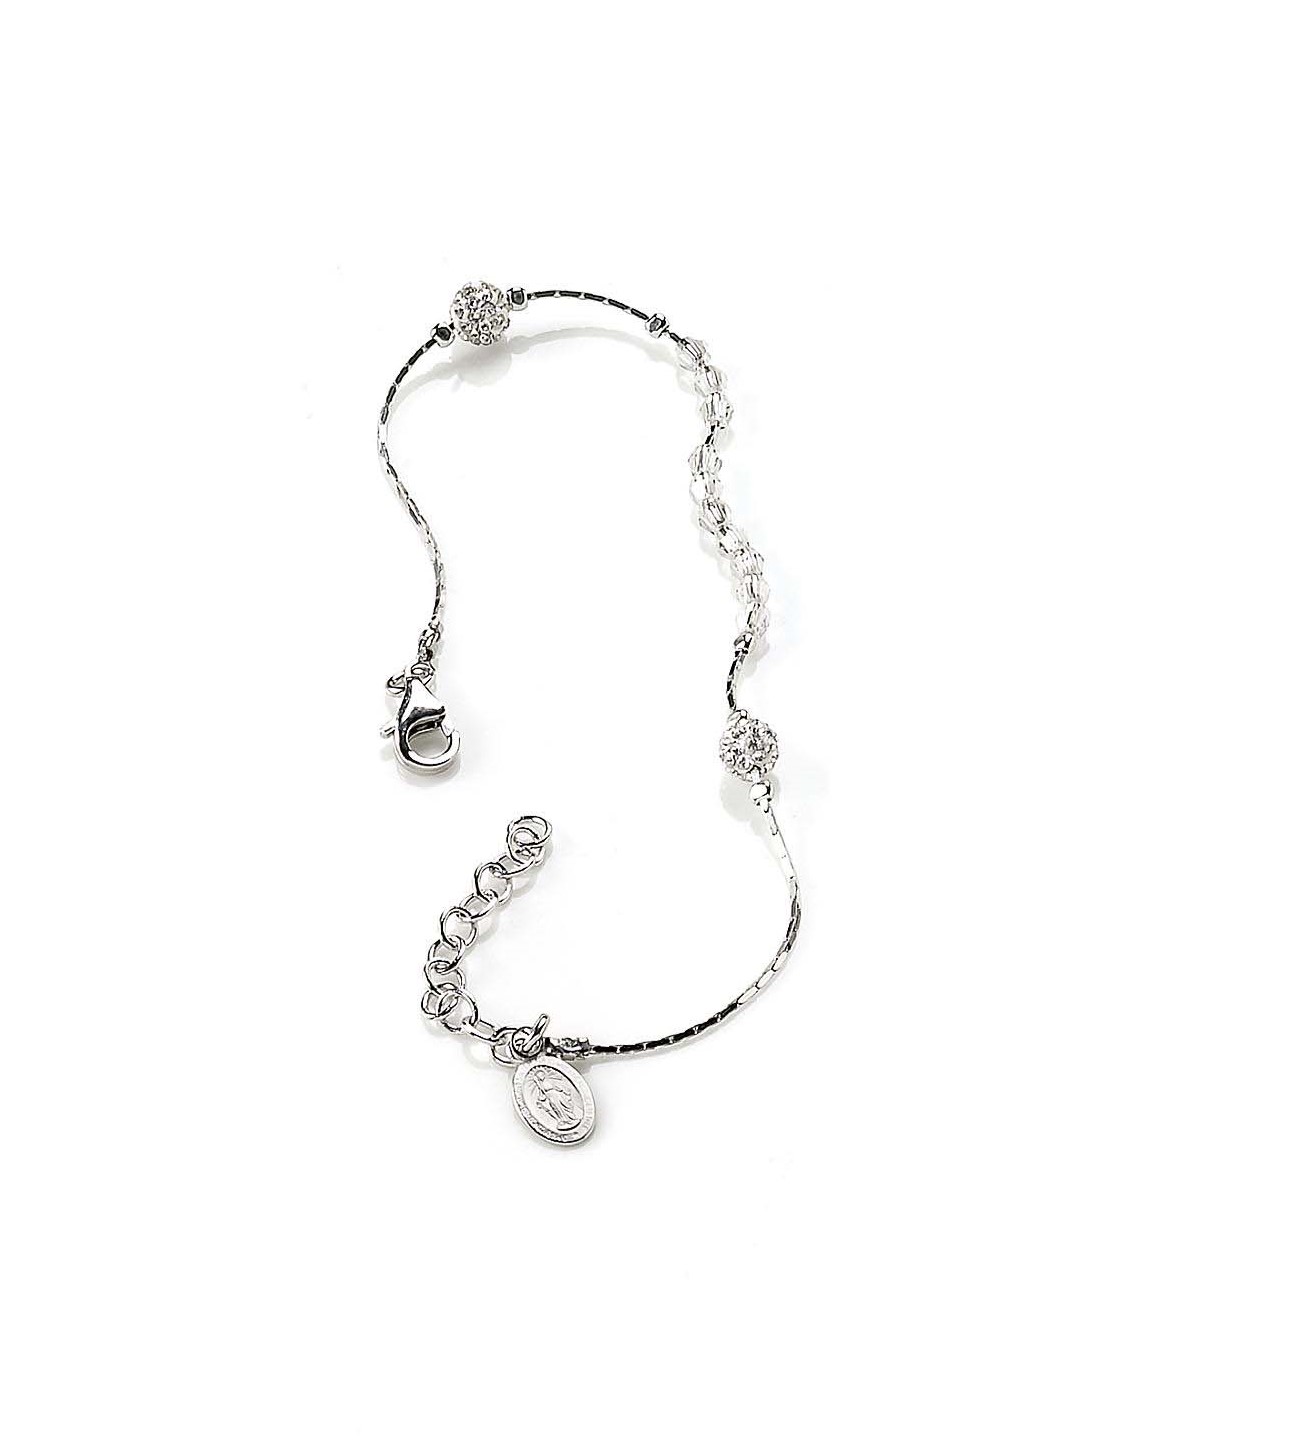 Срібний браслет вервиця з білими кристалами Swarovski (код RA 354 R) 17-20 см